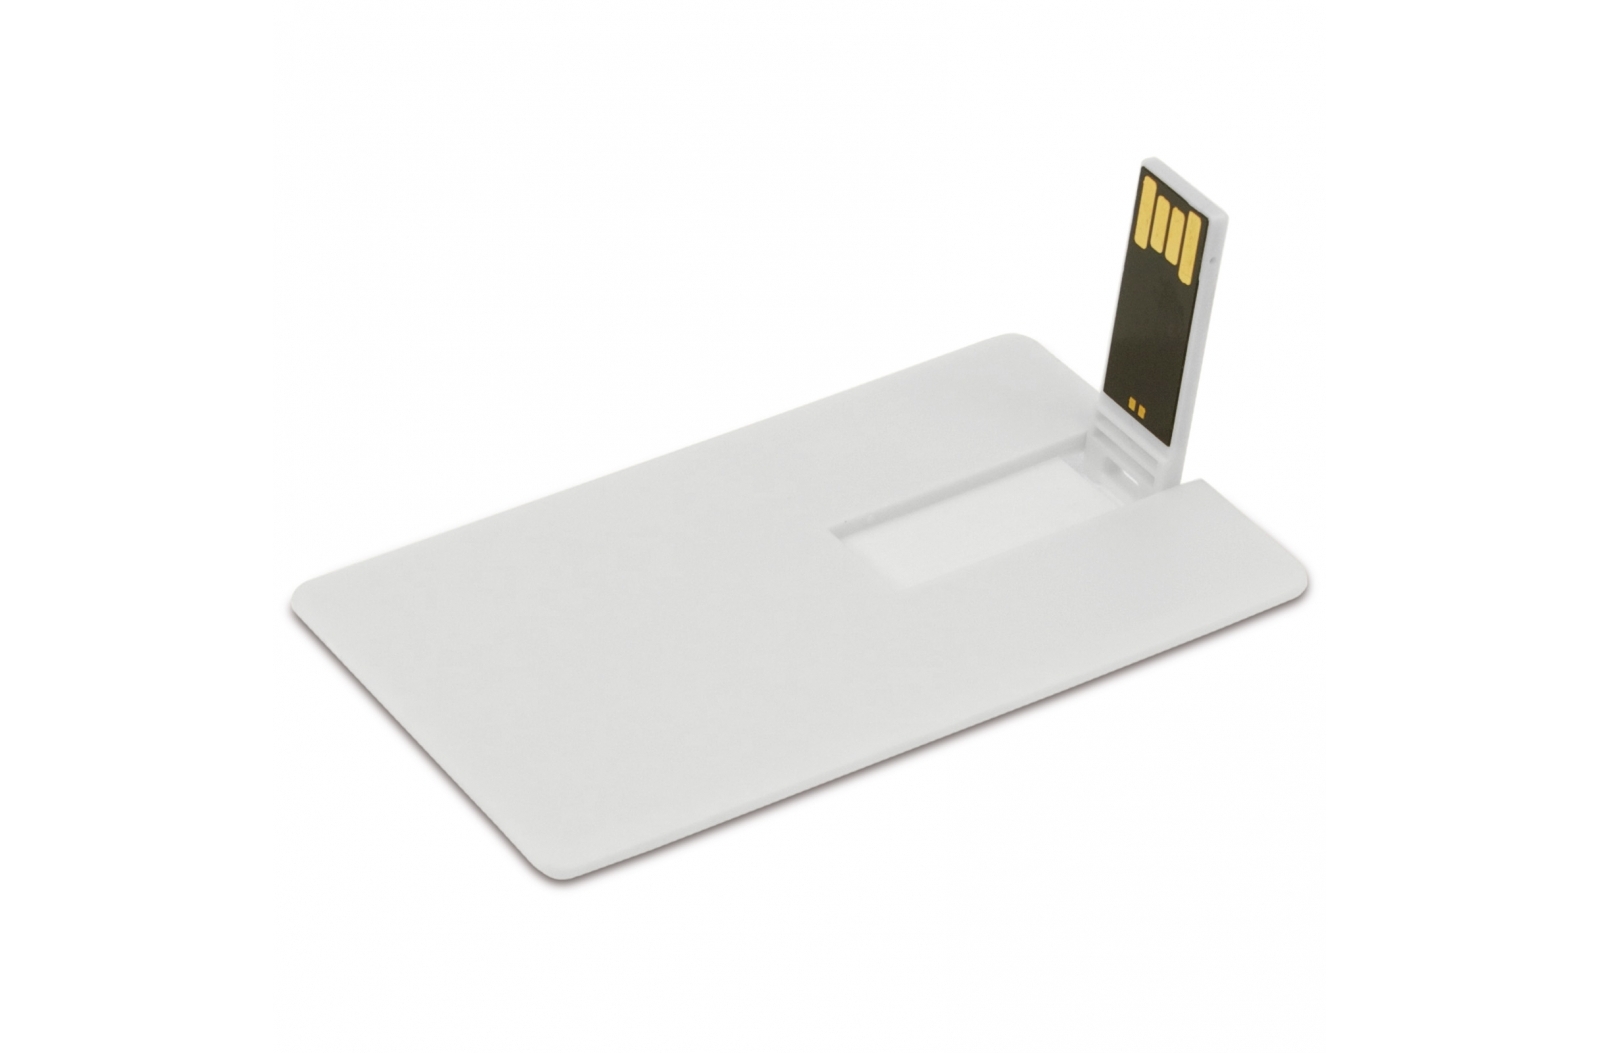 Unidad Flash USB de 4GB del tamaño de una tarjeta de crédito - Sopeira